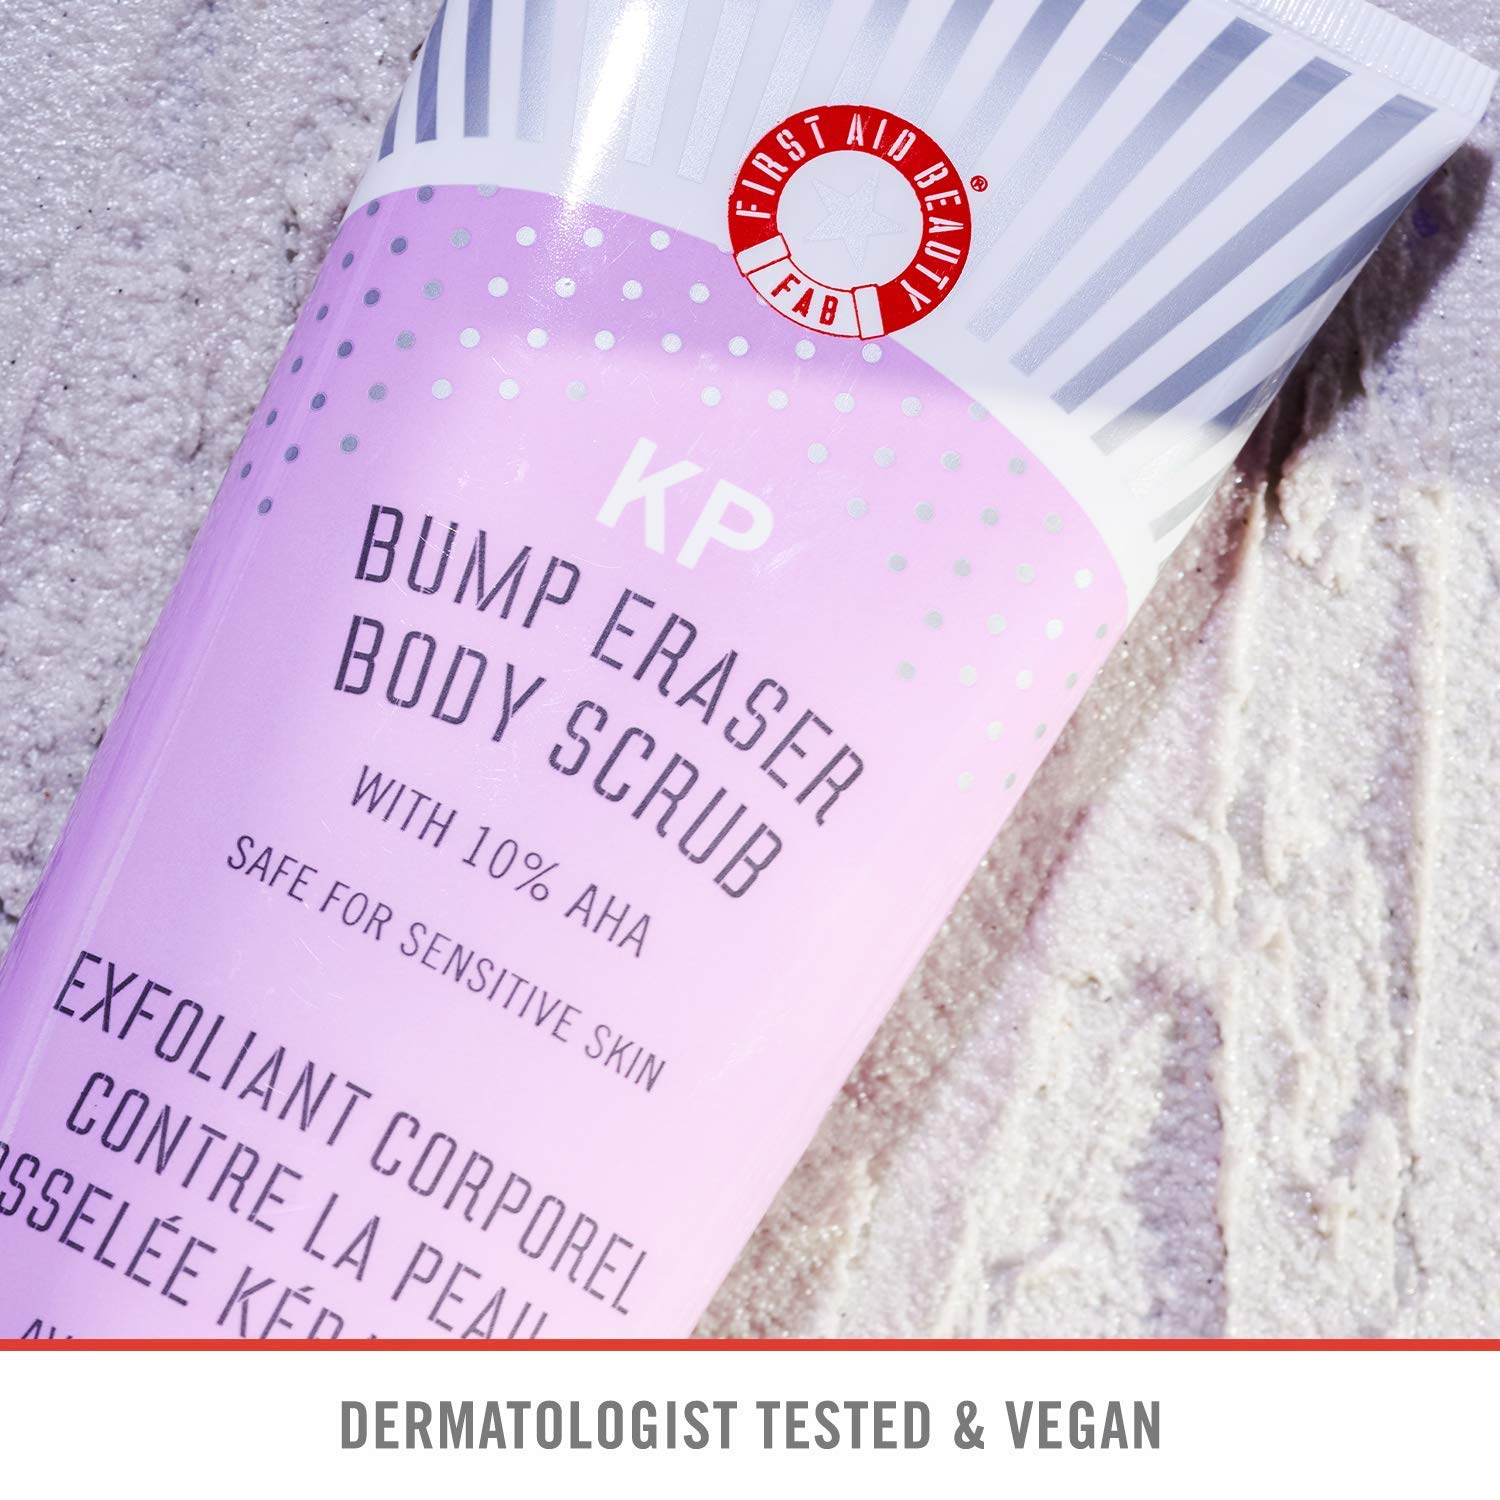 First Aid Beauty KP Bump Eraser Body Scrub 10% AHA (28.3g)